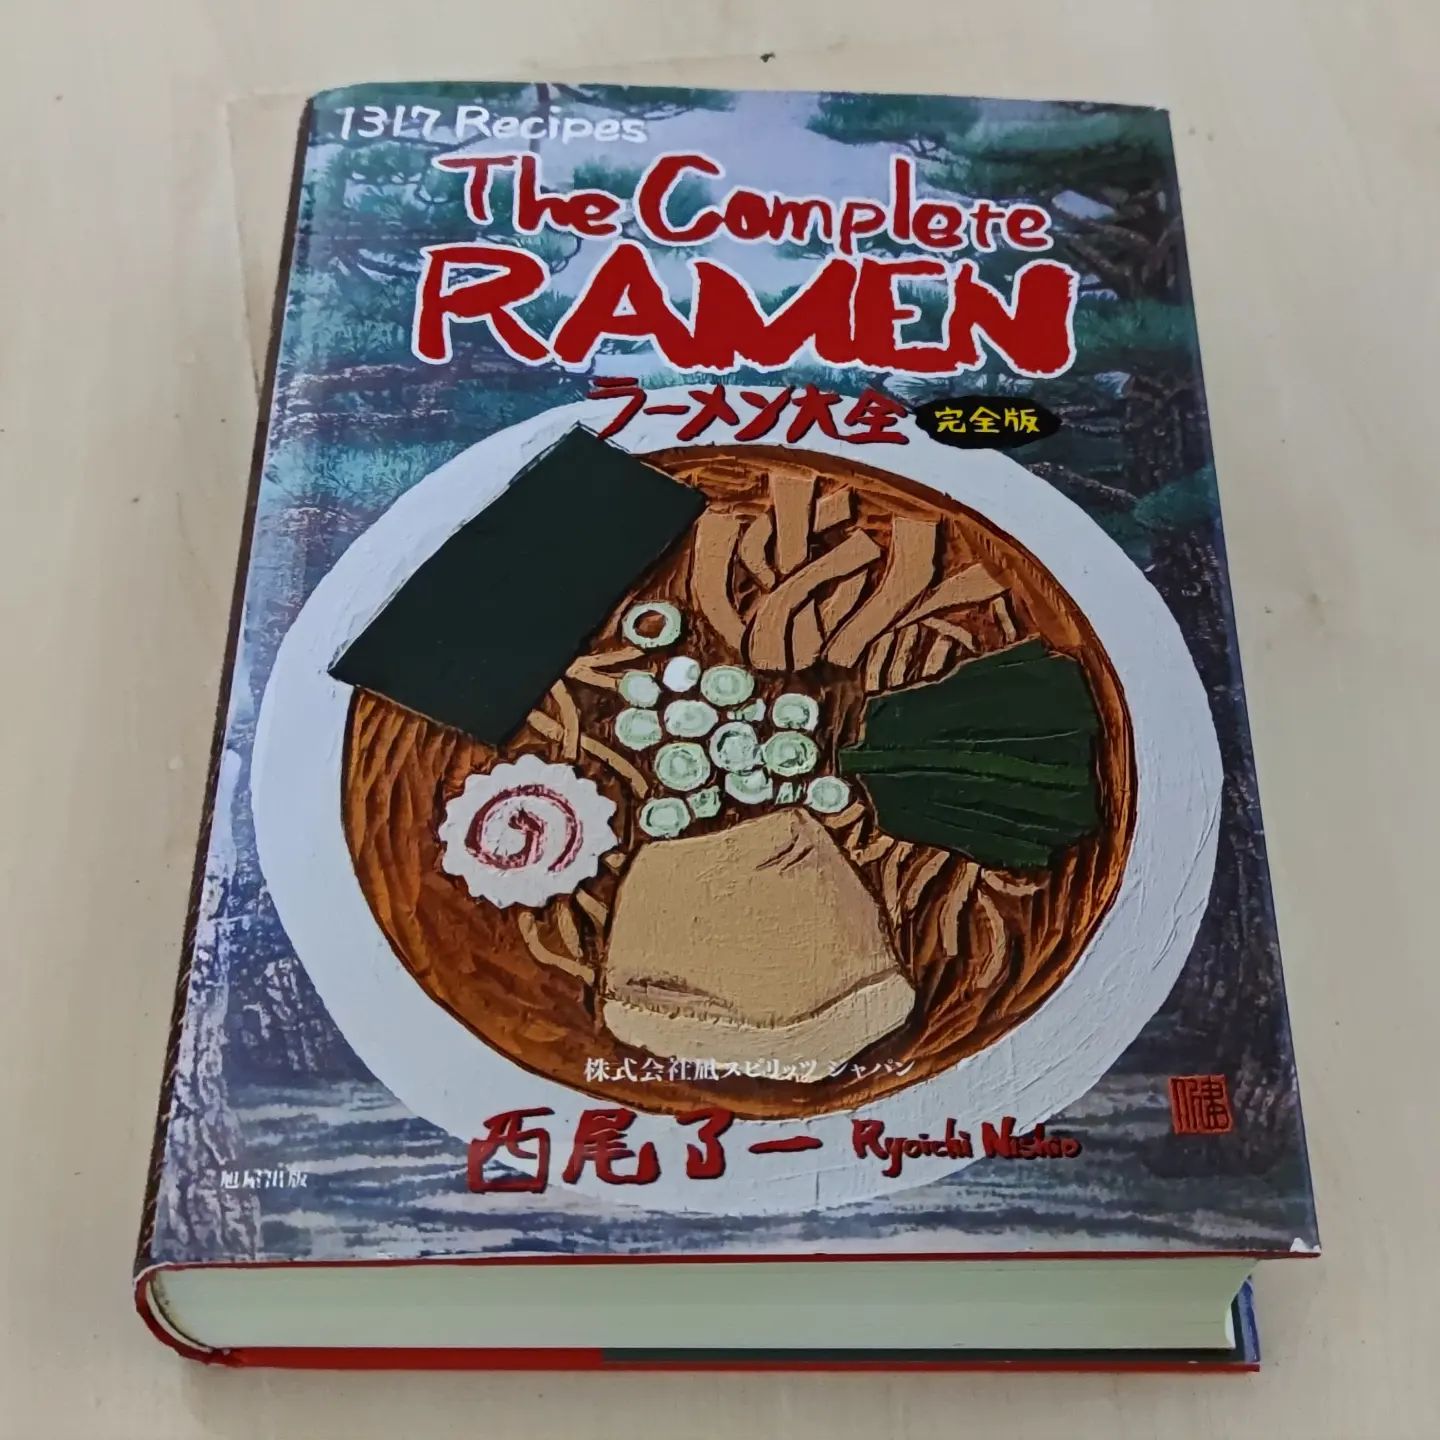 1200 páginas de recetas e información de #ramen. Un trabajo espectacular de @ramennagi_nishio

Una herramienta imprescindible para continuar aprendiendo y mejorando!